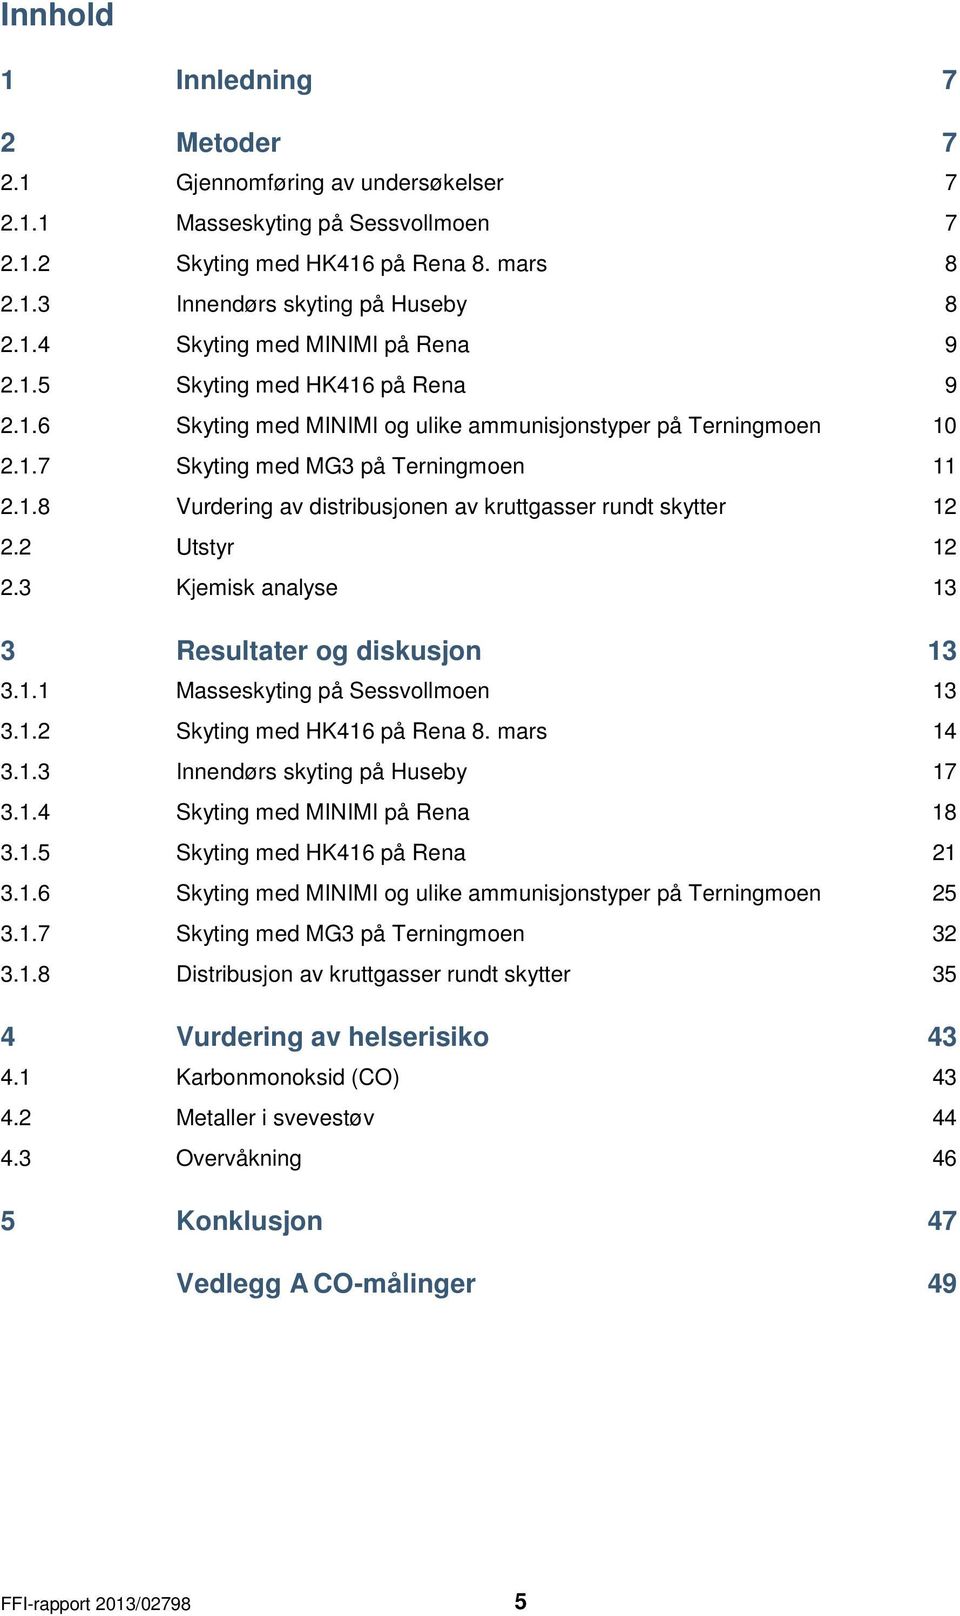 2 Utstyr 12 2.3 Kjemisk analyse 13 3 Resultater og diskusjon 13 3.1.1 Masseskyting på Sessvollmoen 13 3.1.2 Skyting med HK416 på Rena 8. mars 14 3.1.3 Innendørs skyting på Huseby 17 3.1.4 Skyting med MINIMI på Rena 18 3.